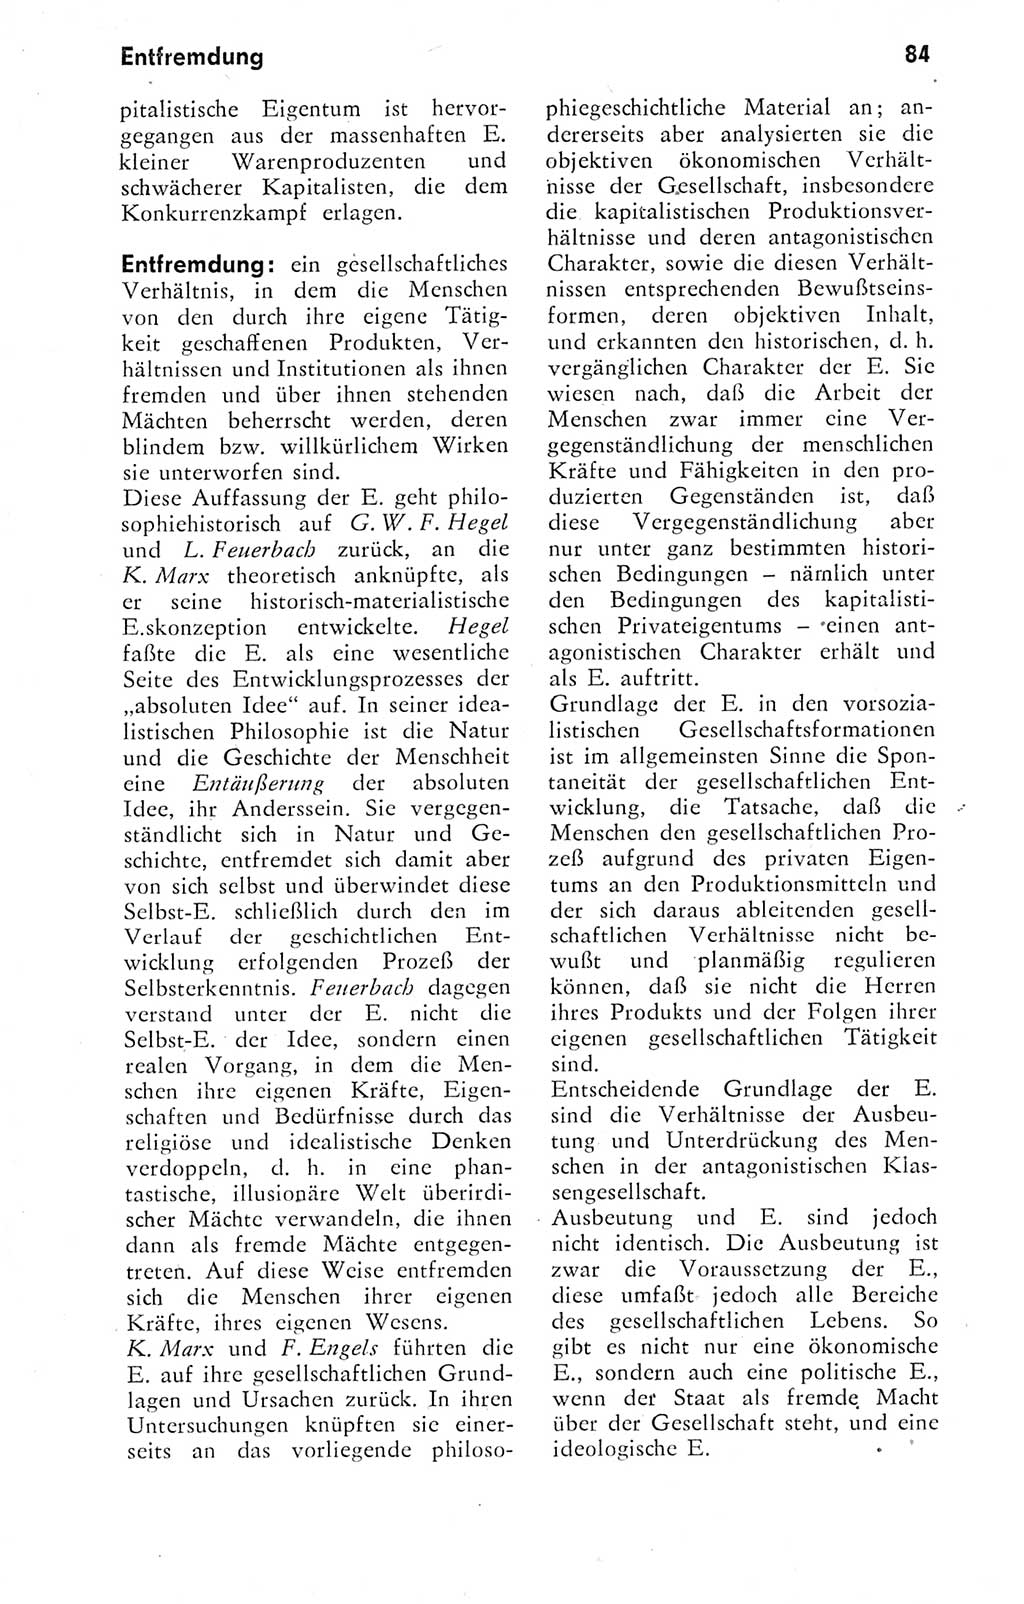 Kleines Wörterbuch der marxistisch-leninistischen Philosophie [Deutsche Demokratische Republik (DDR)] 1974, Seite 84 (Kl. Wb. ML Phil. DDR 1974, S. 84)